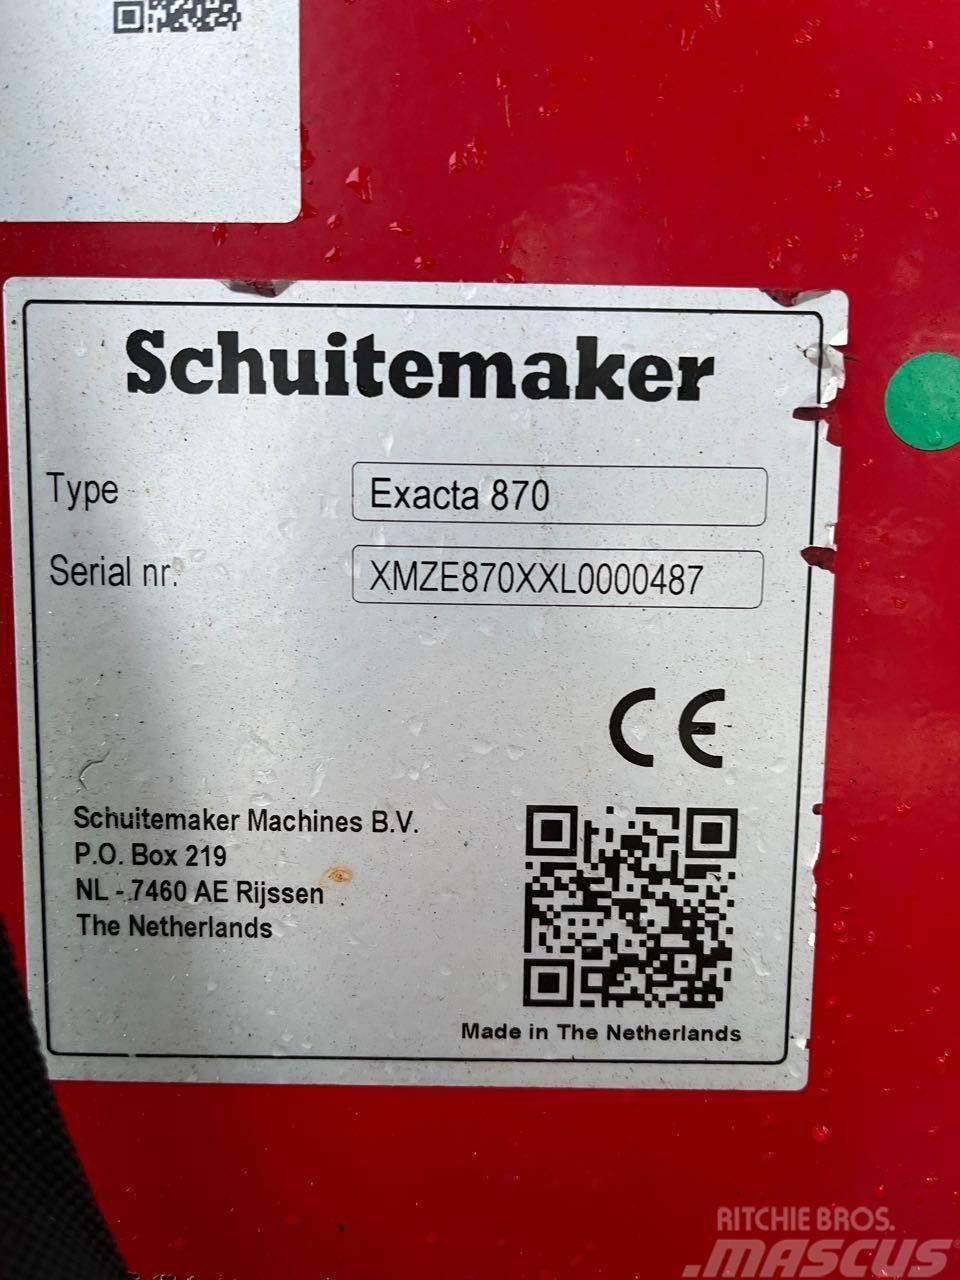 Schuitemaker Exacta 870 Other fertilizing machines and accessories